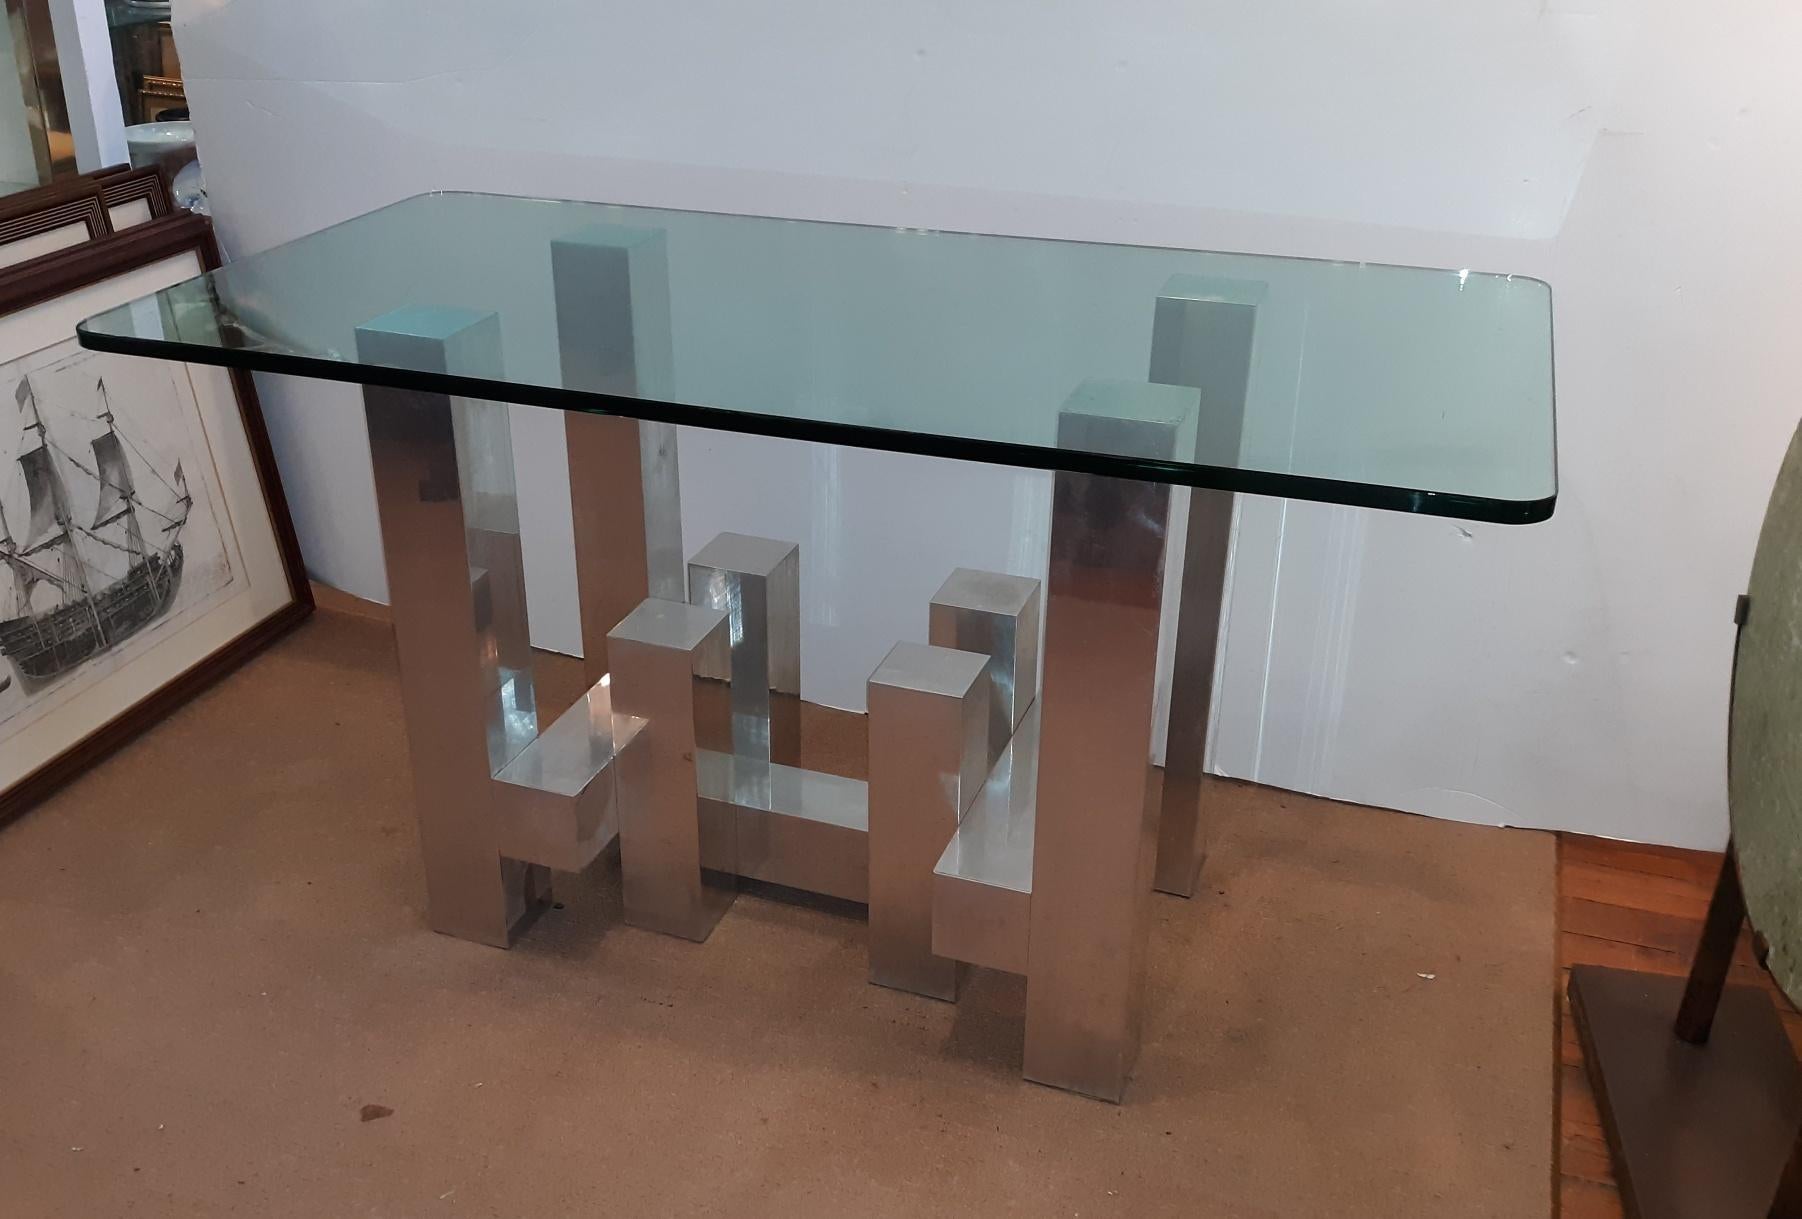 Table chic et moderne en aluminium et verre épais à la manière de Paul Evans. La forme 